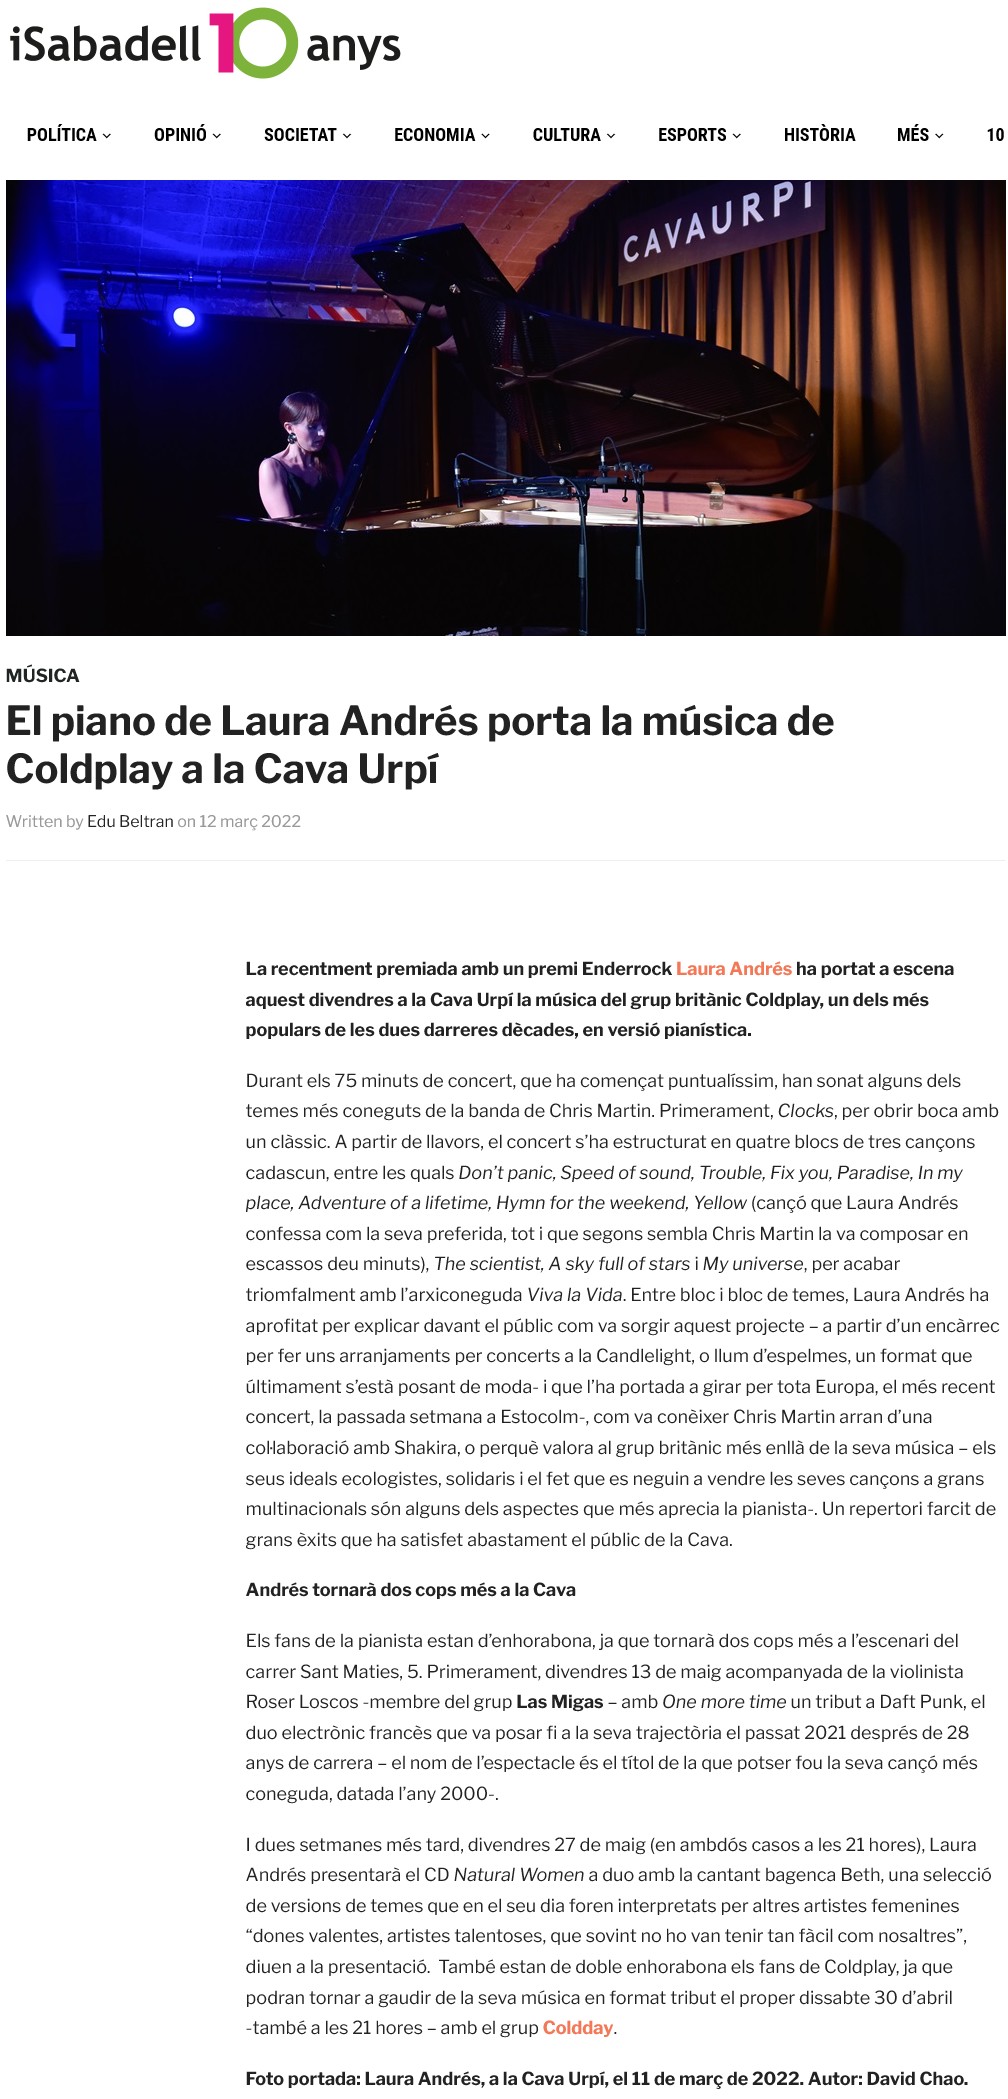 iSabadell: El piano de Laura Andrés porta la música de Coldplay a la Cava Urpí